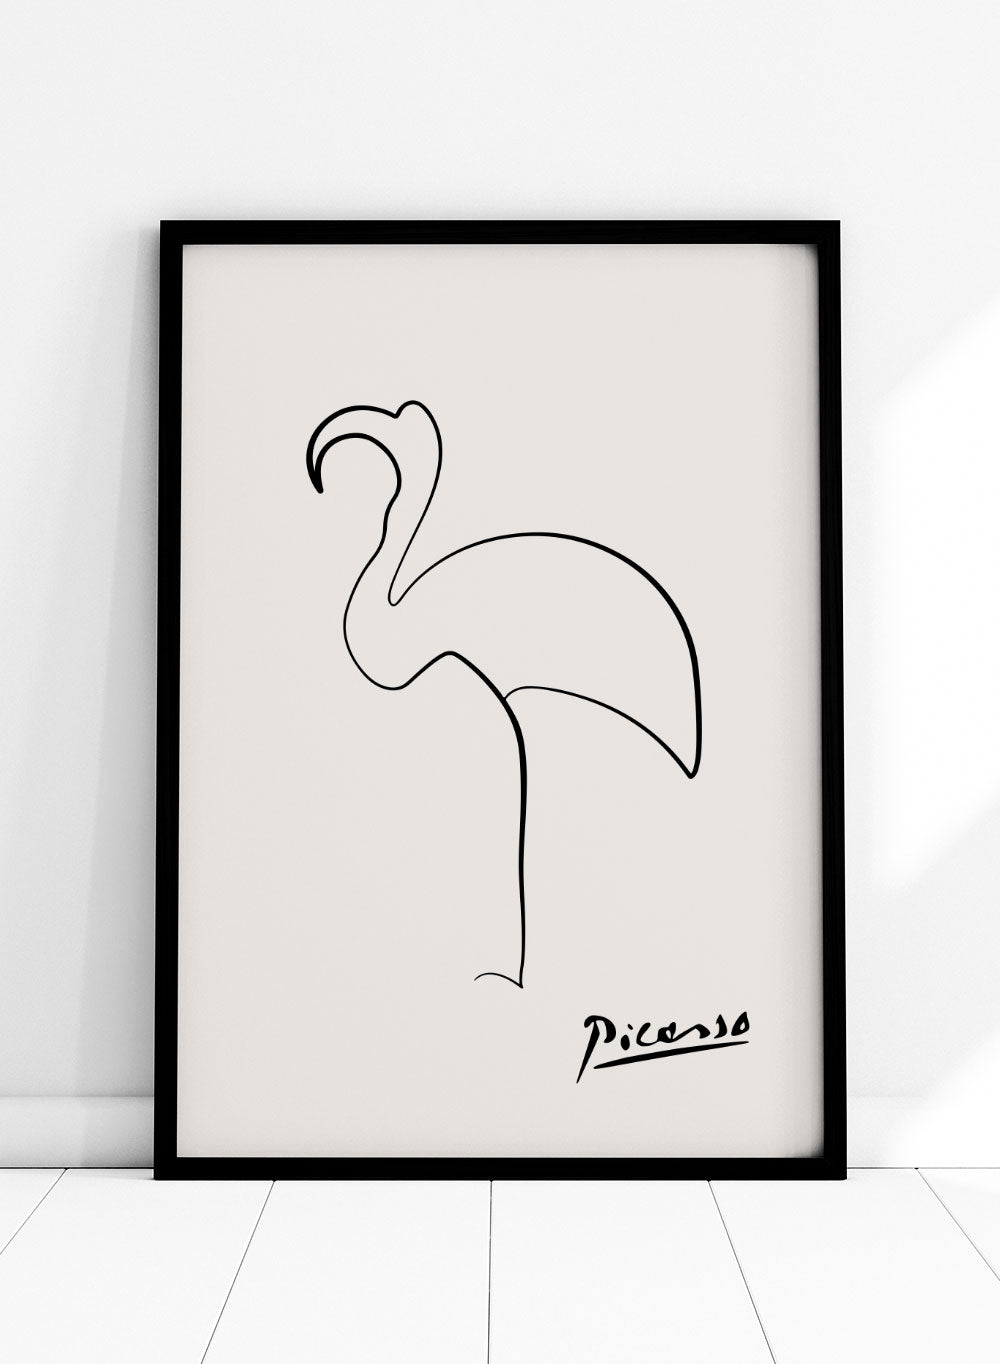 Flamingo Drawing Images - Free Download on Freepik